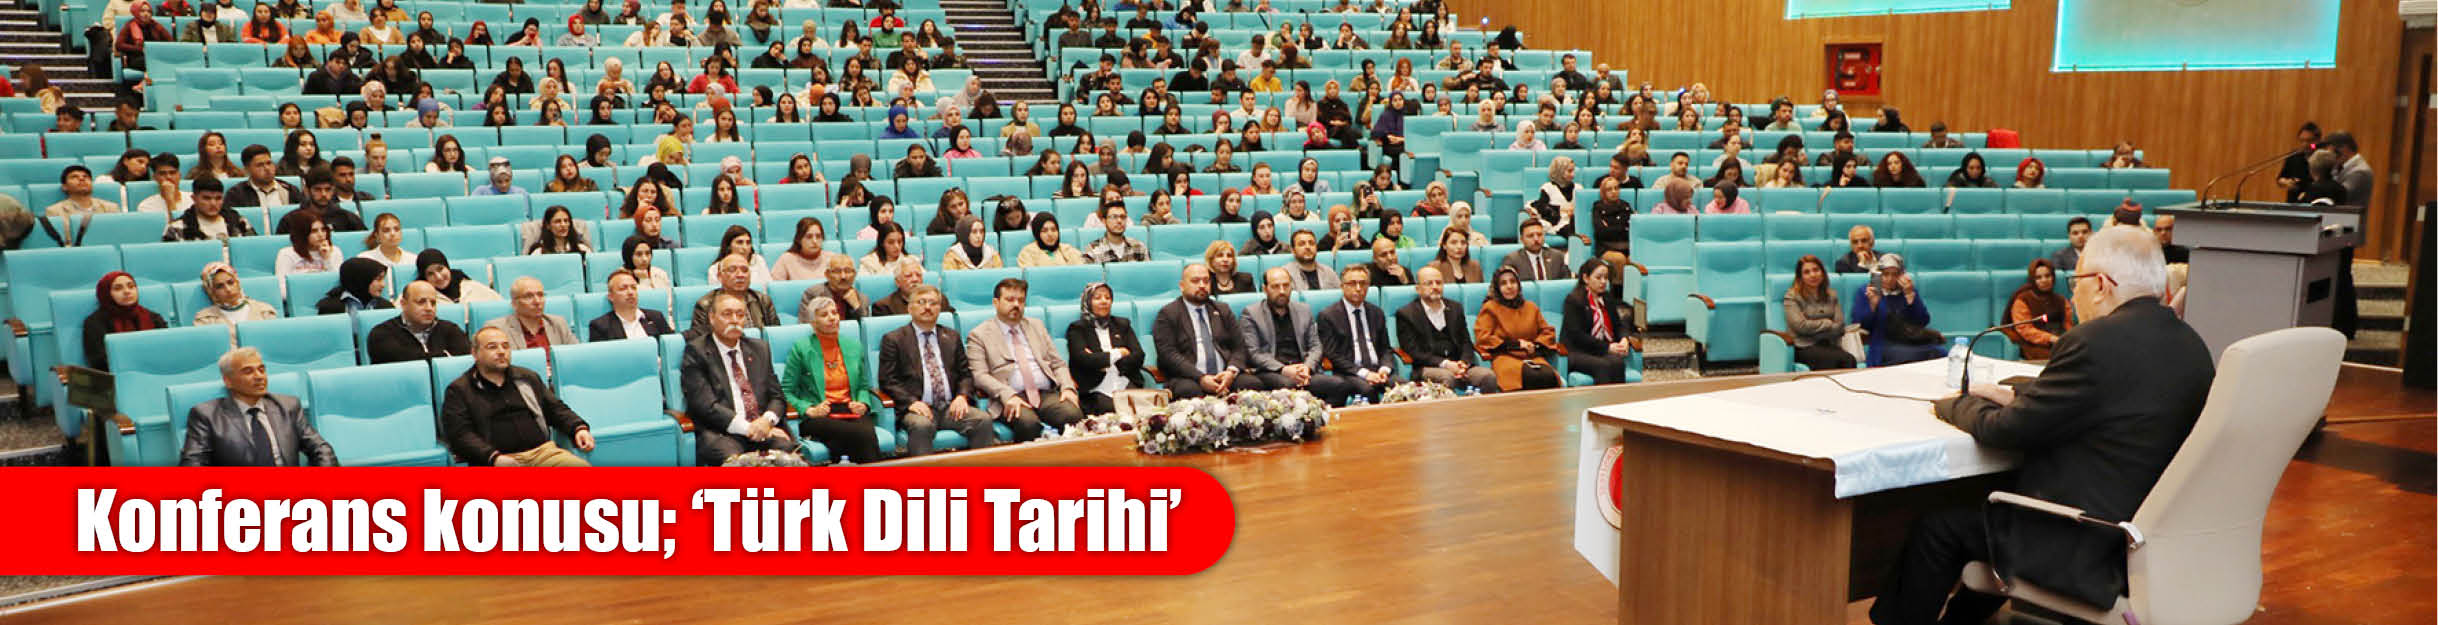 Konferans konusu; ‘Türk Dili Tarihi’